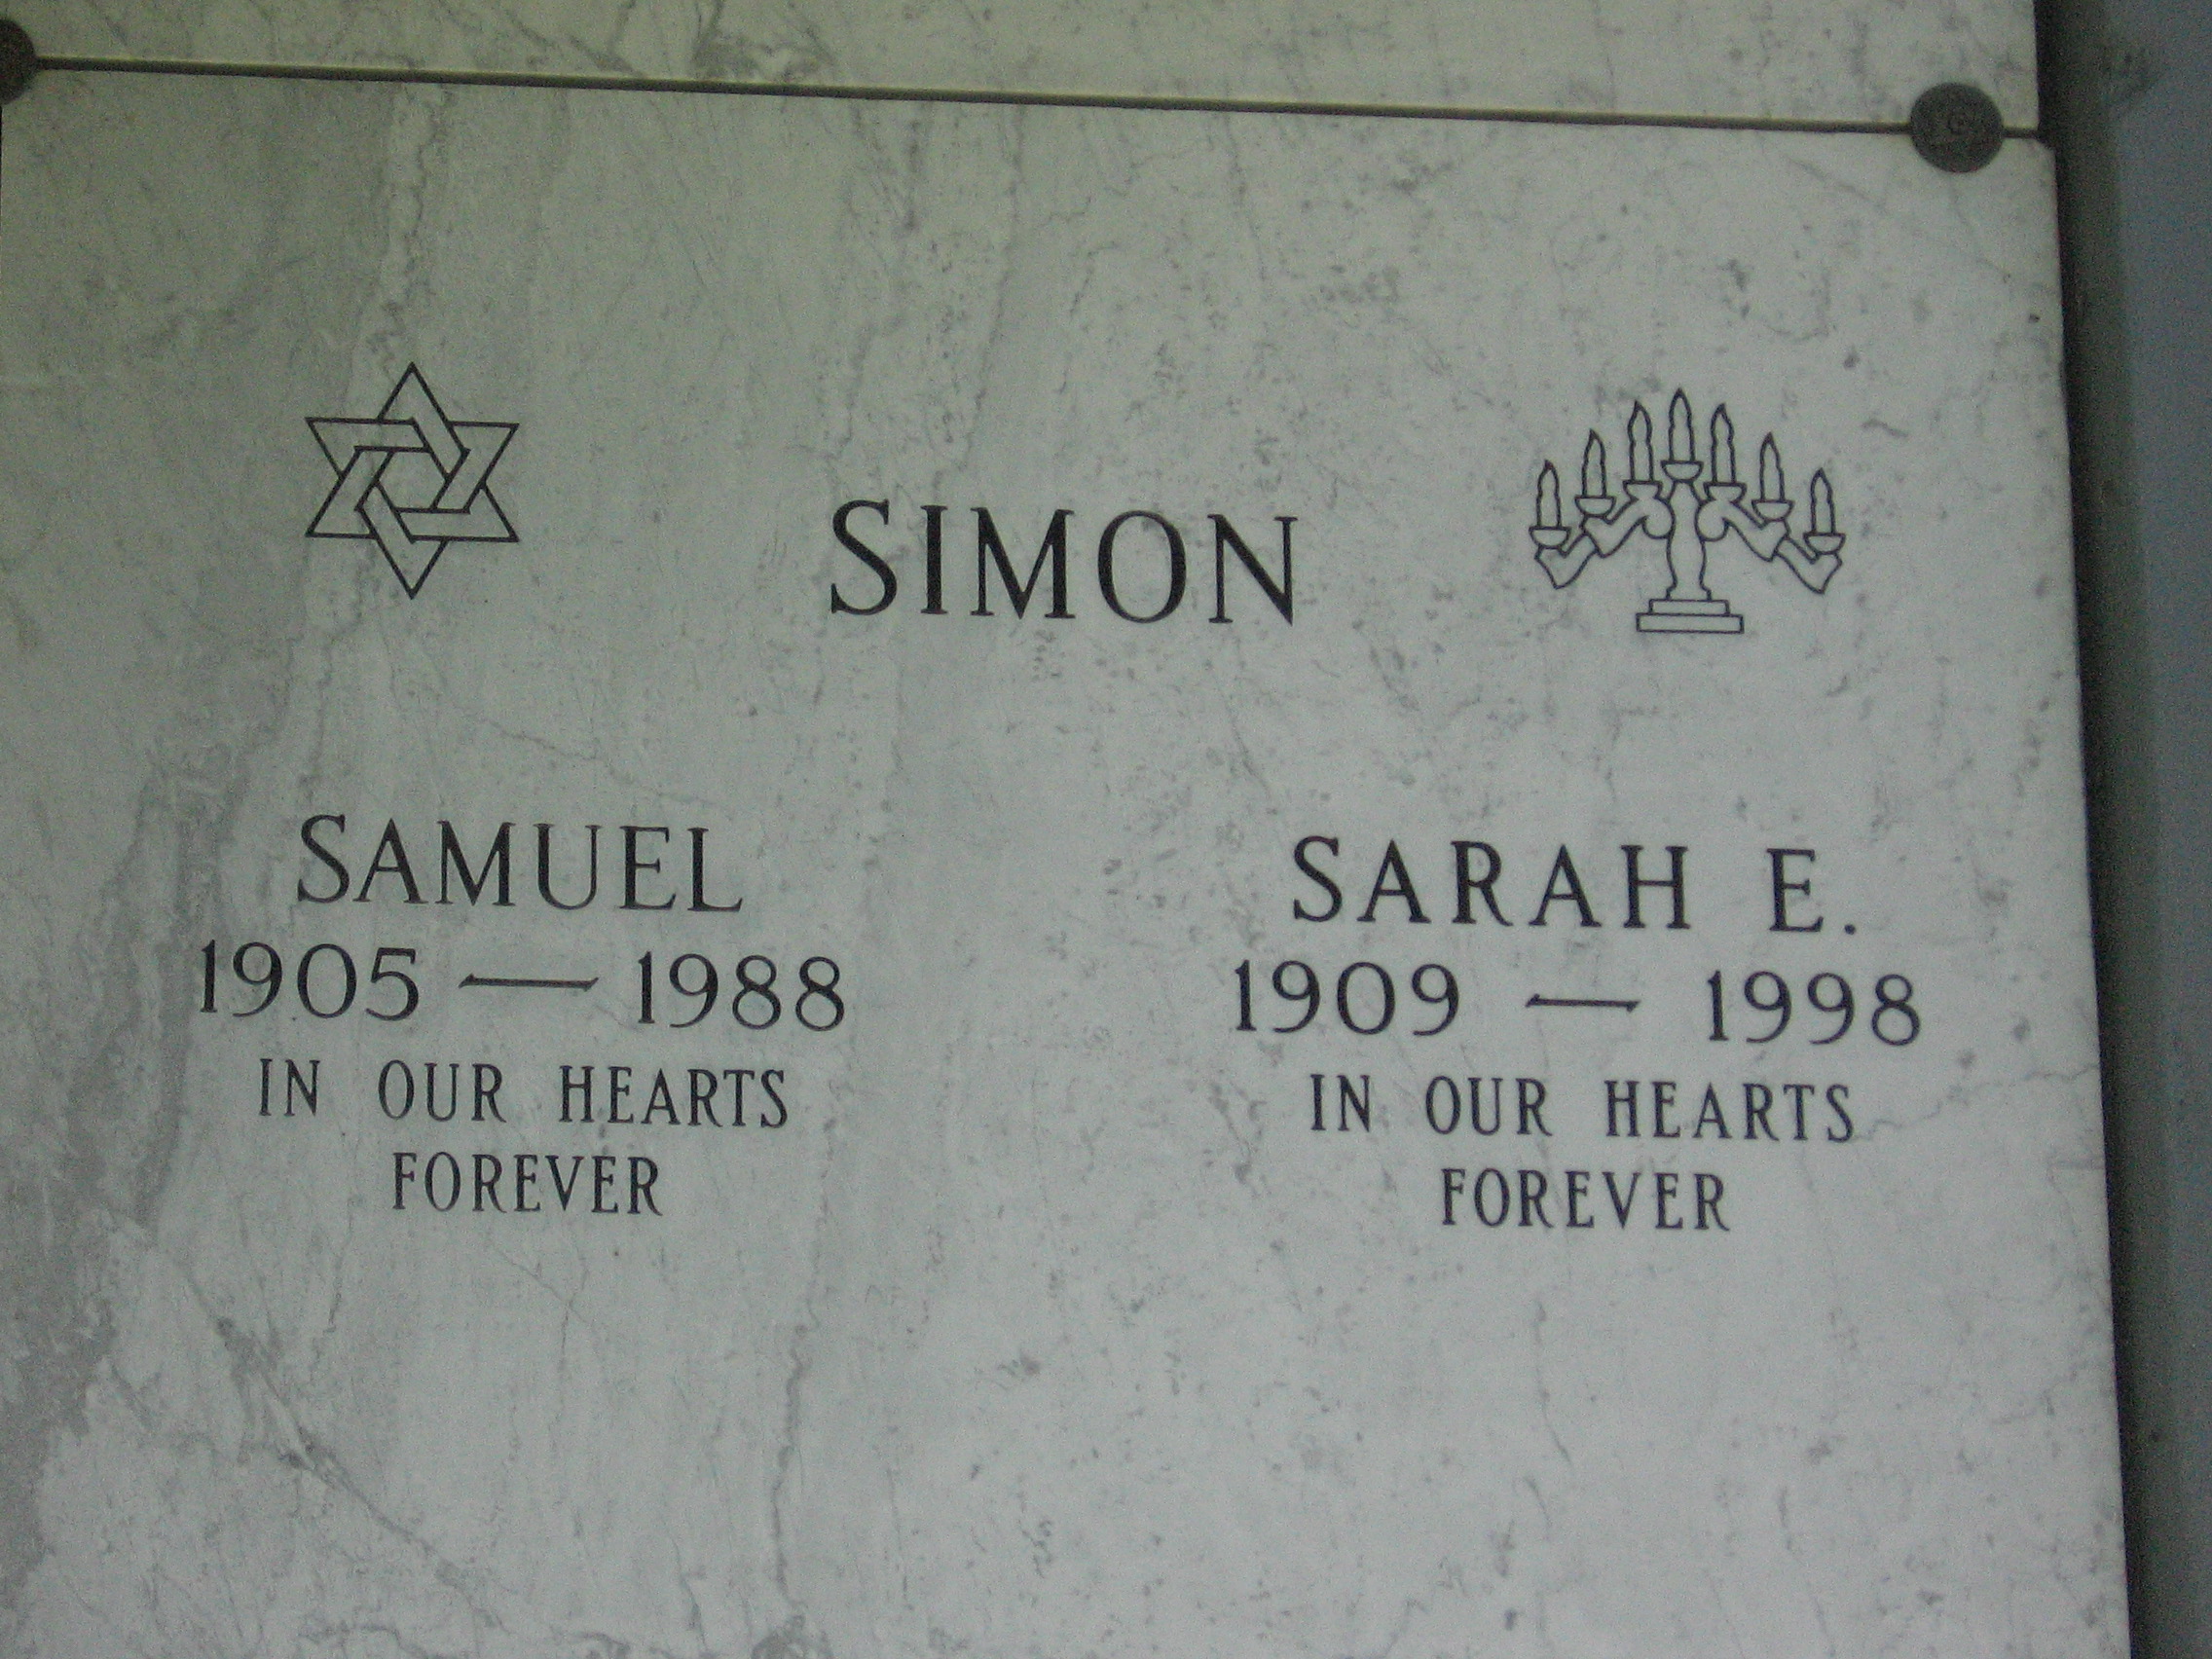 Samuel Simon